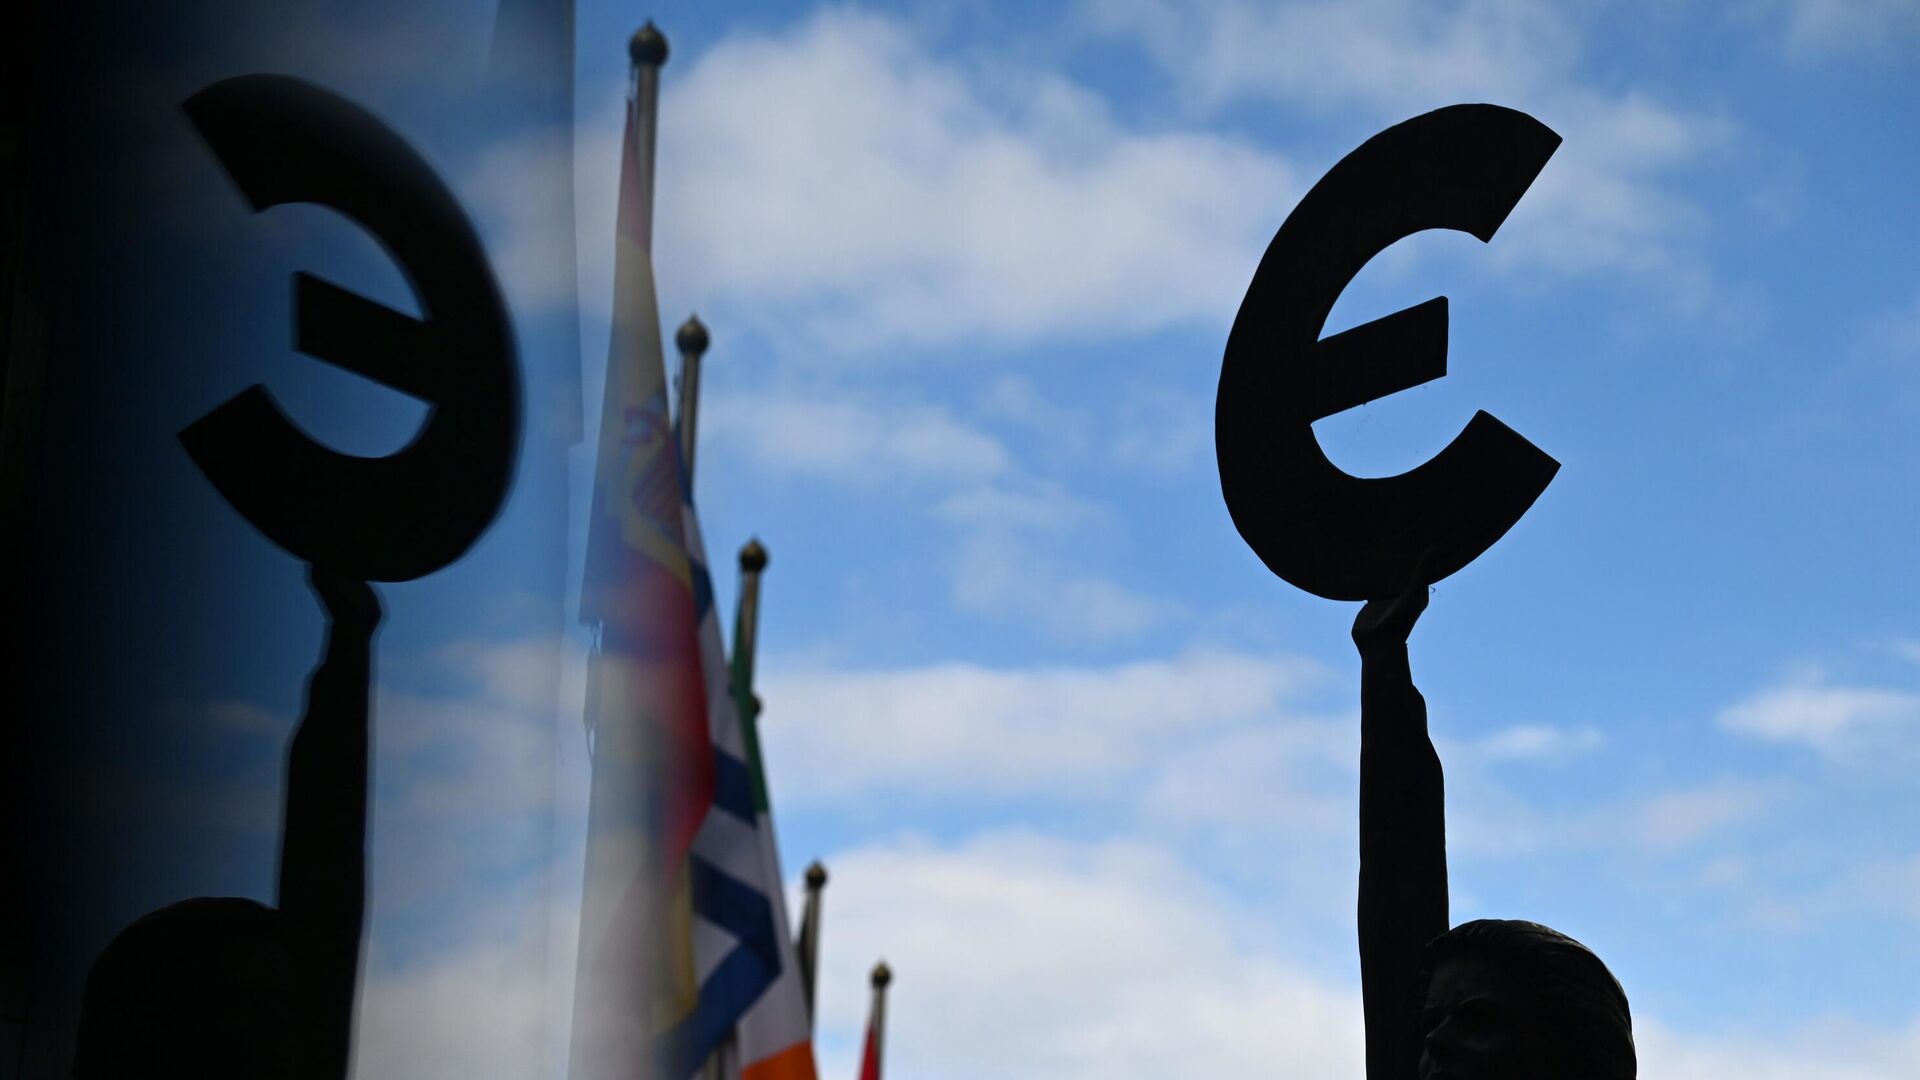 Памятник-скульптура знаку Евро у здания штаб-квартиры Европейского парламента в Брюсселе - РИА Новости, 1920, 29.09.2022